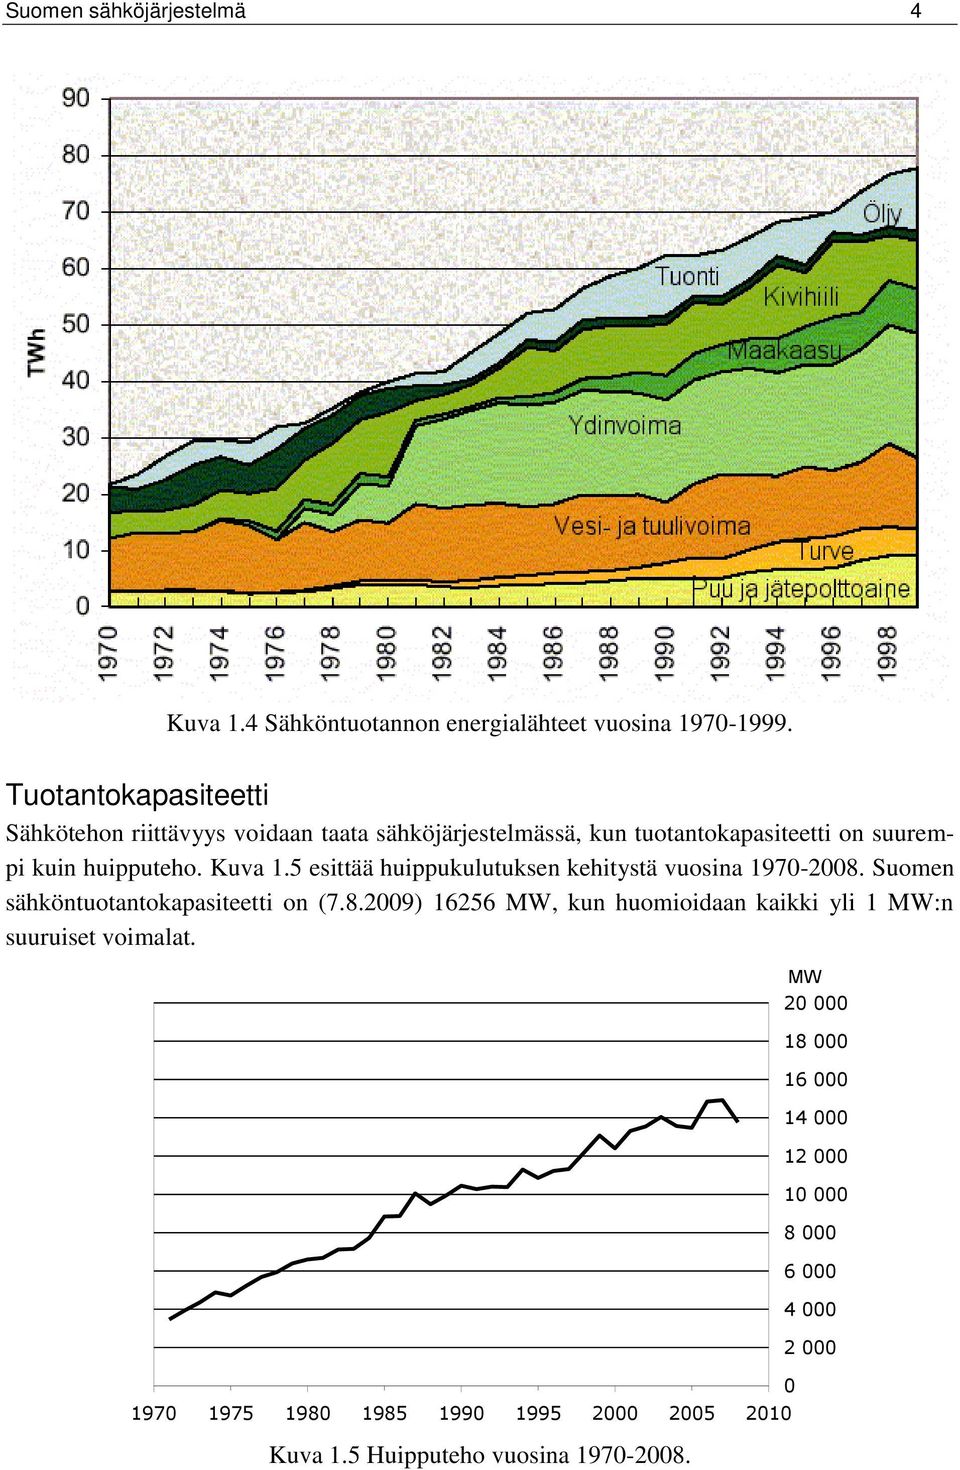 Kuva 1.5 esittää huippukulutuksen kehitystä vuosina 1970-2008. Suomen sähköntuotantokapasiteetti on (7.8.2009) 16256 MW, kun huomioidaan kaikki yli 1 MW:n suuruiset voimalat.